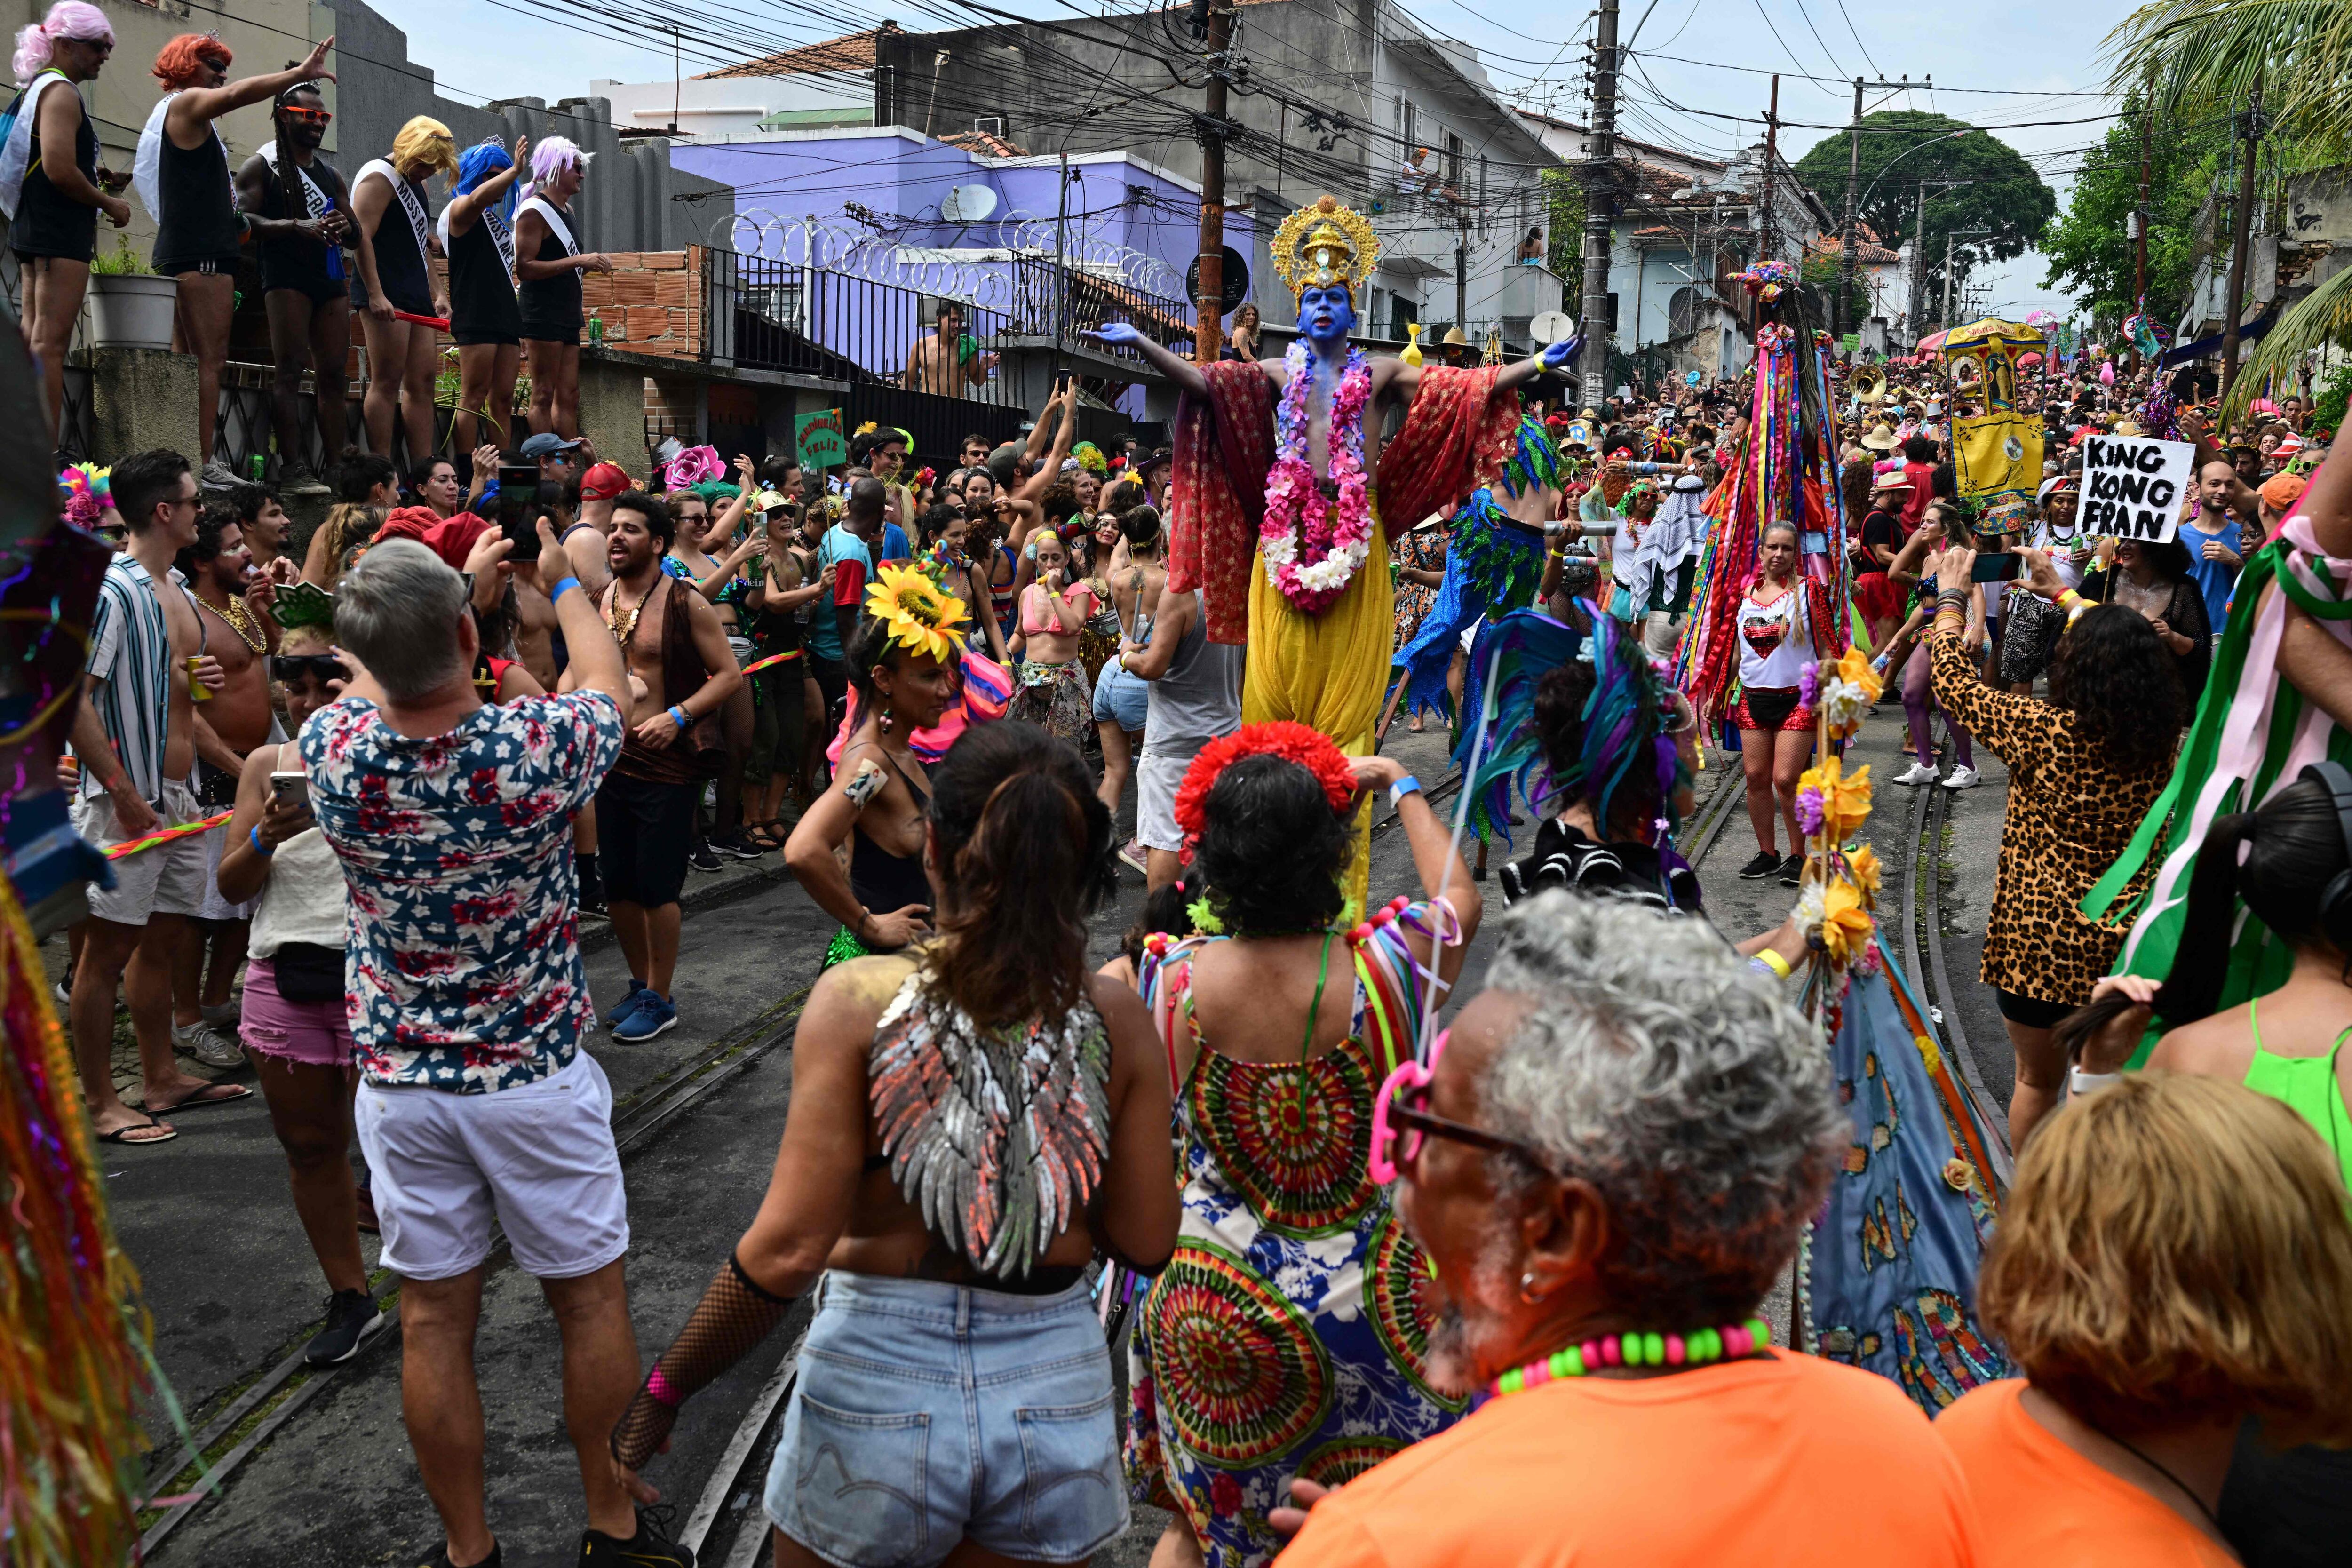 Los juerguistas participan en el desfile del grupo "bloco" del carnaval callejero 'Ceu a Terra' en el barrio de Santa Teresa en Río de Janeiro, Brasil, el 4 de febrero de 2024. Cientos de 'blocos' tradicionales desfilarán en el período previo al mundial anual de Brasil Carnaval de renombre. (Photo by Pablo PORCIUNCULA / AFP)